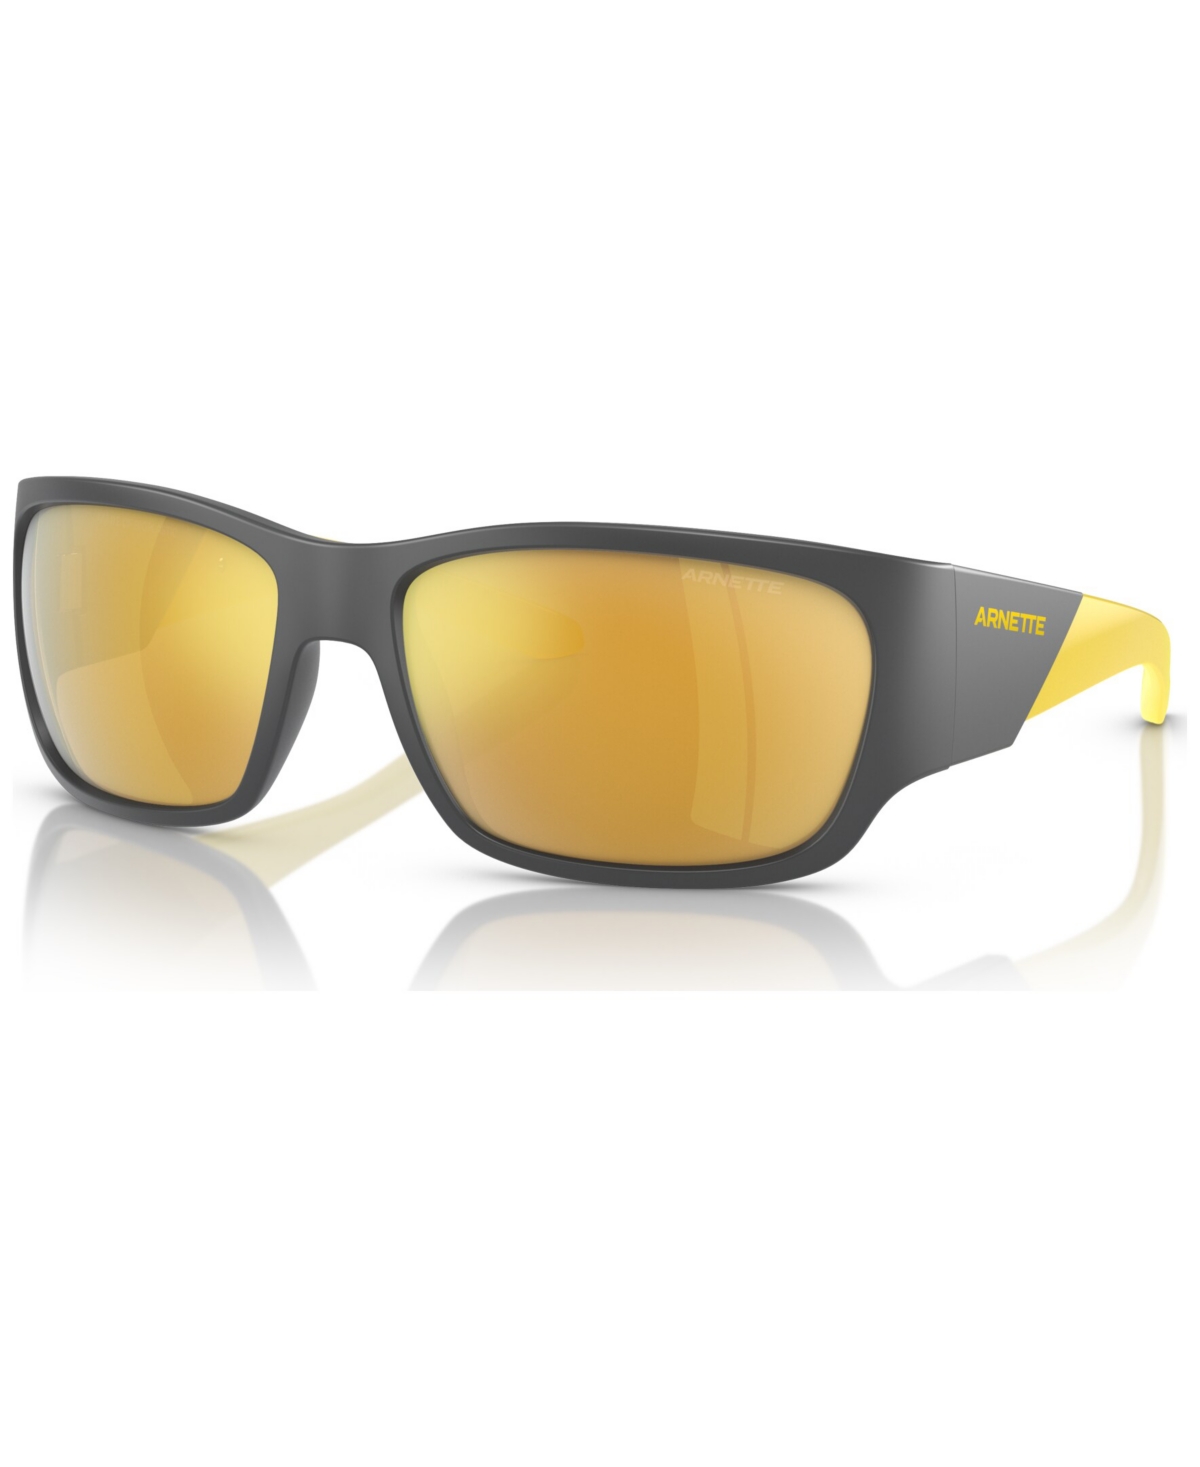 Arnette Men's Sunglasses, Lil' Snap In Gold